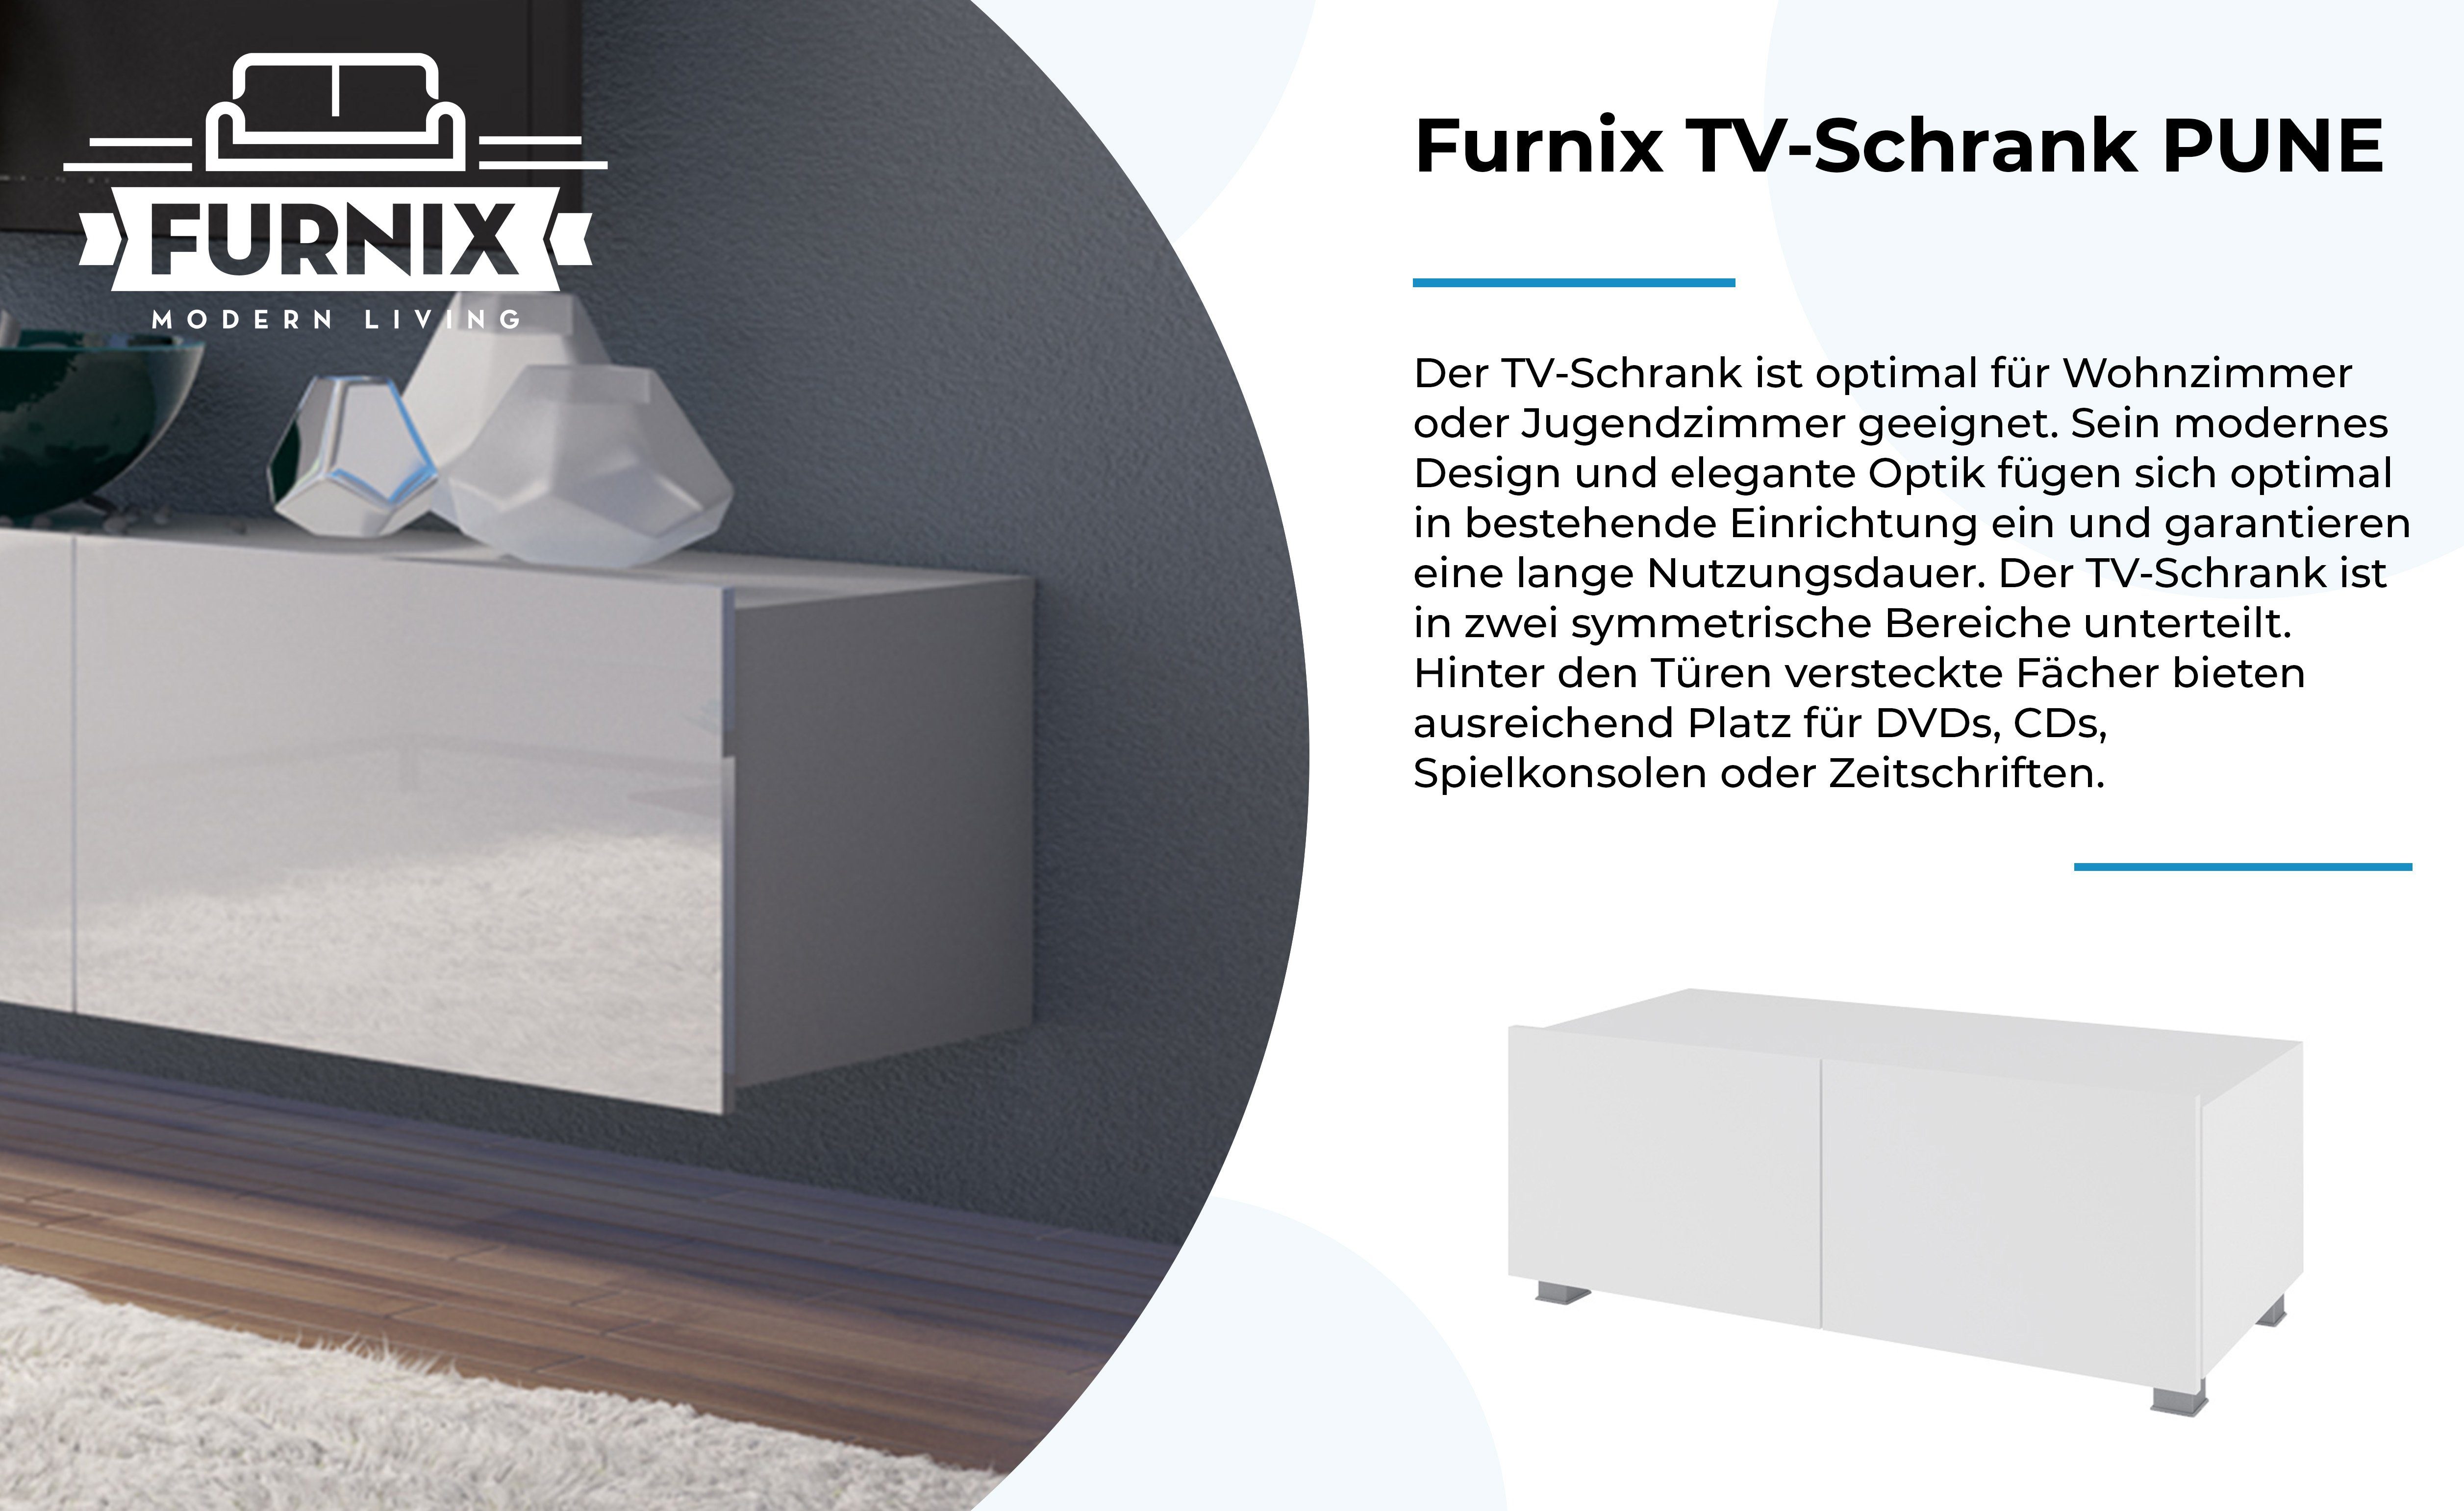 Furnix nach Wohnzimmer Wahl 100 fürs Glanz PUNE oder TV-Schrank Wandmontage freistähend Weiß/Weiß TV-Lowboard möglich